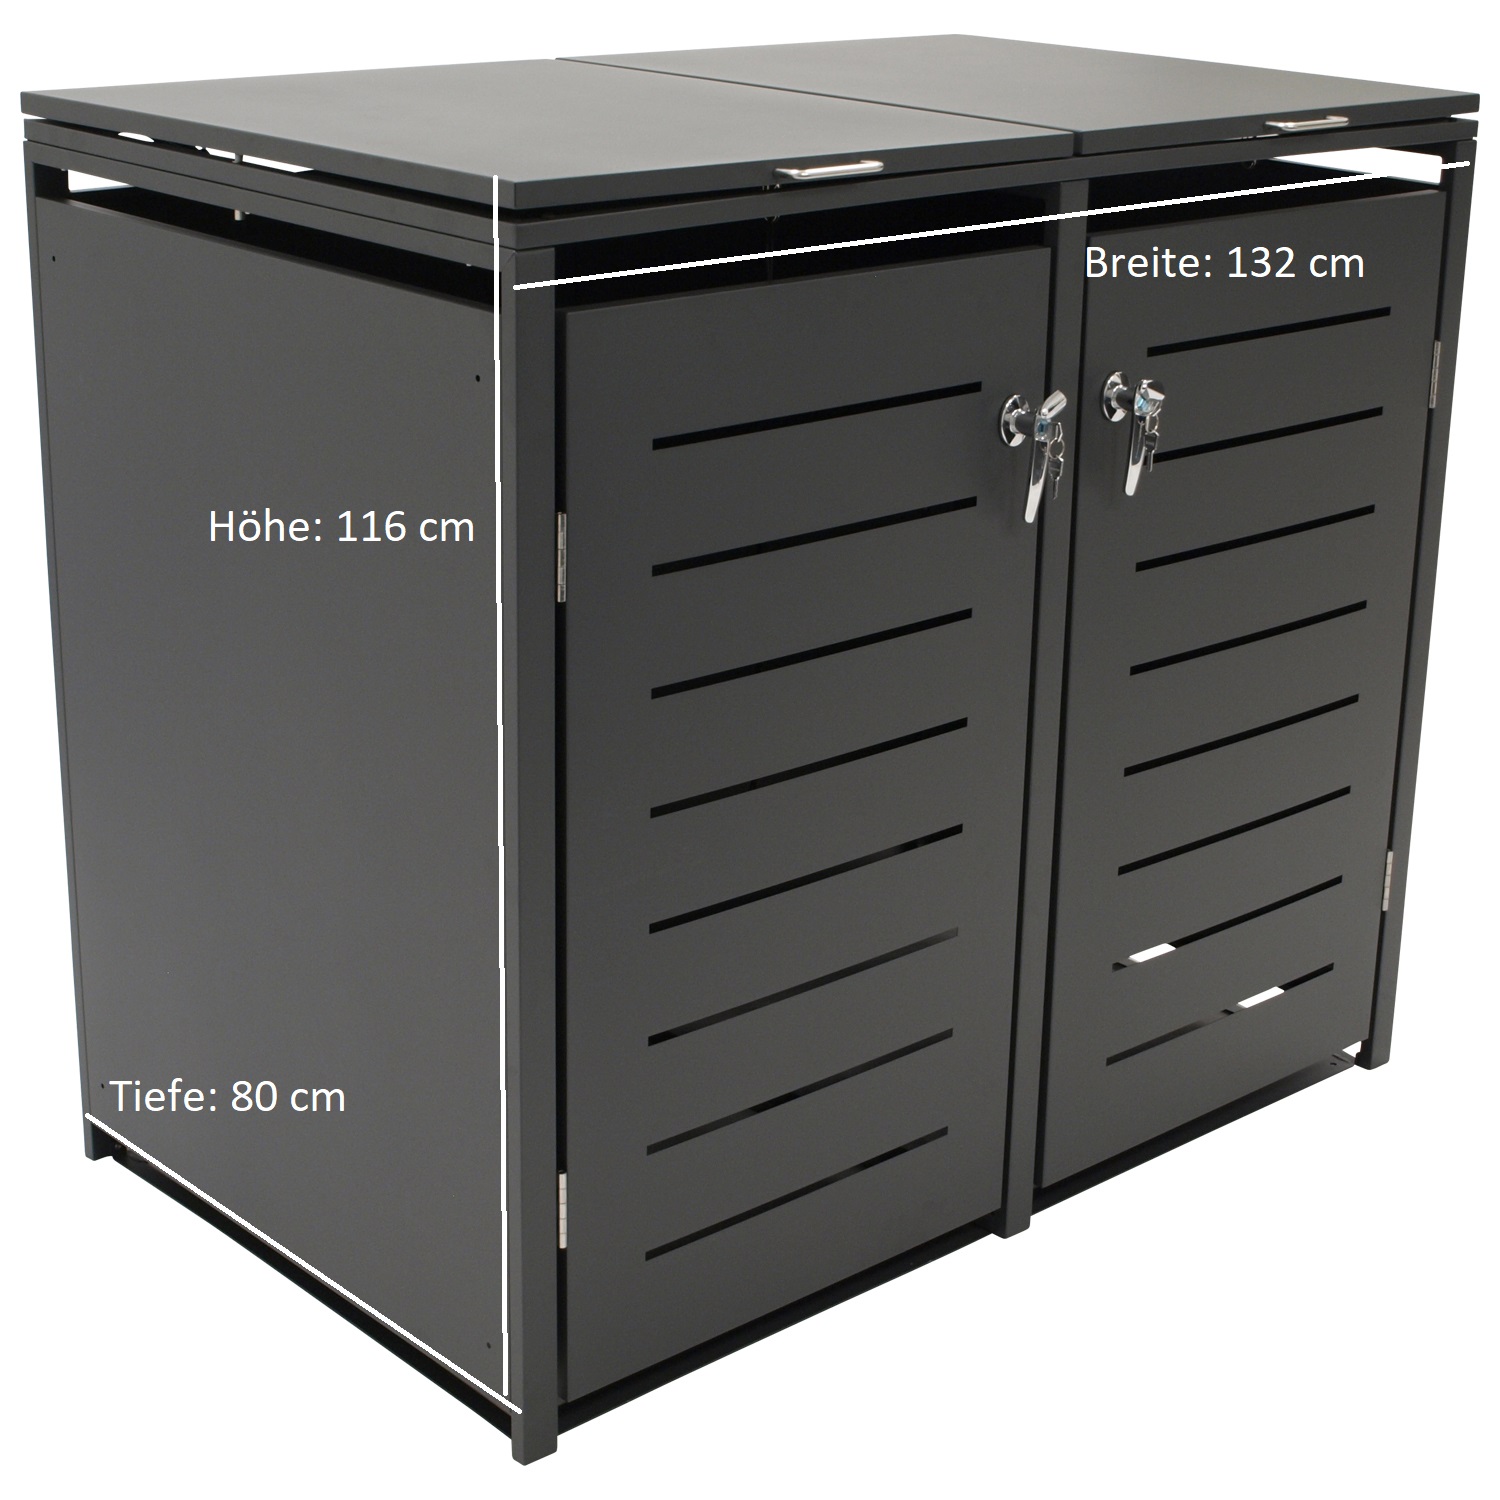 Mülltonnenbox KÖLN Stahl anthrazit, 132x80x116cm, für 2x Tonnen 120 und 240 Liter